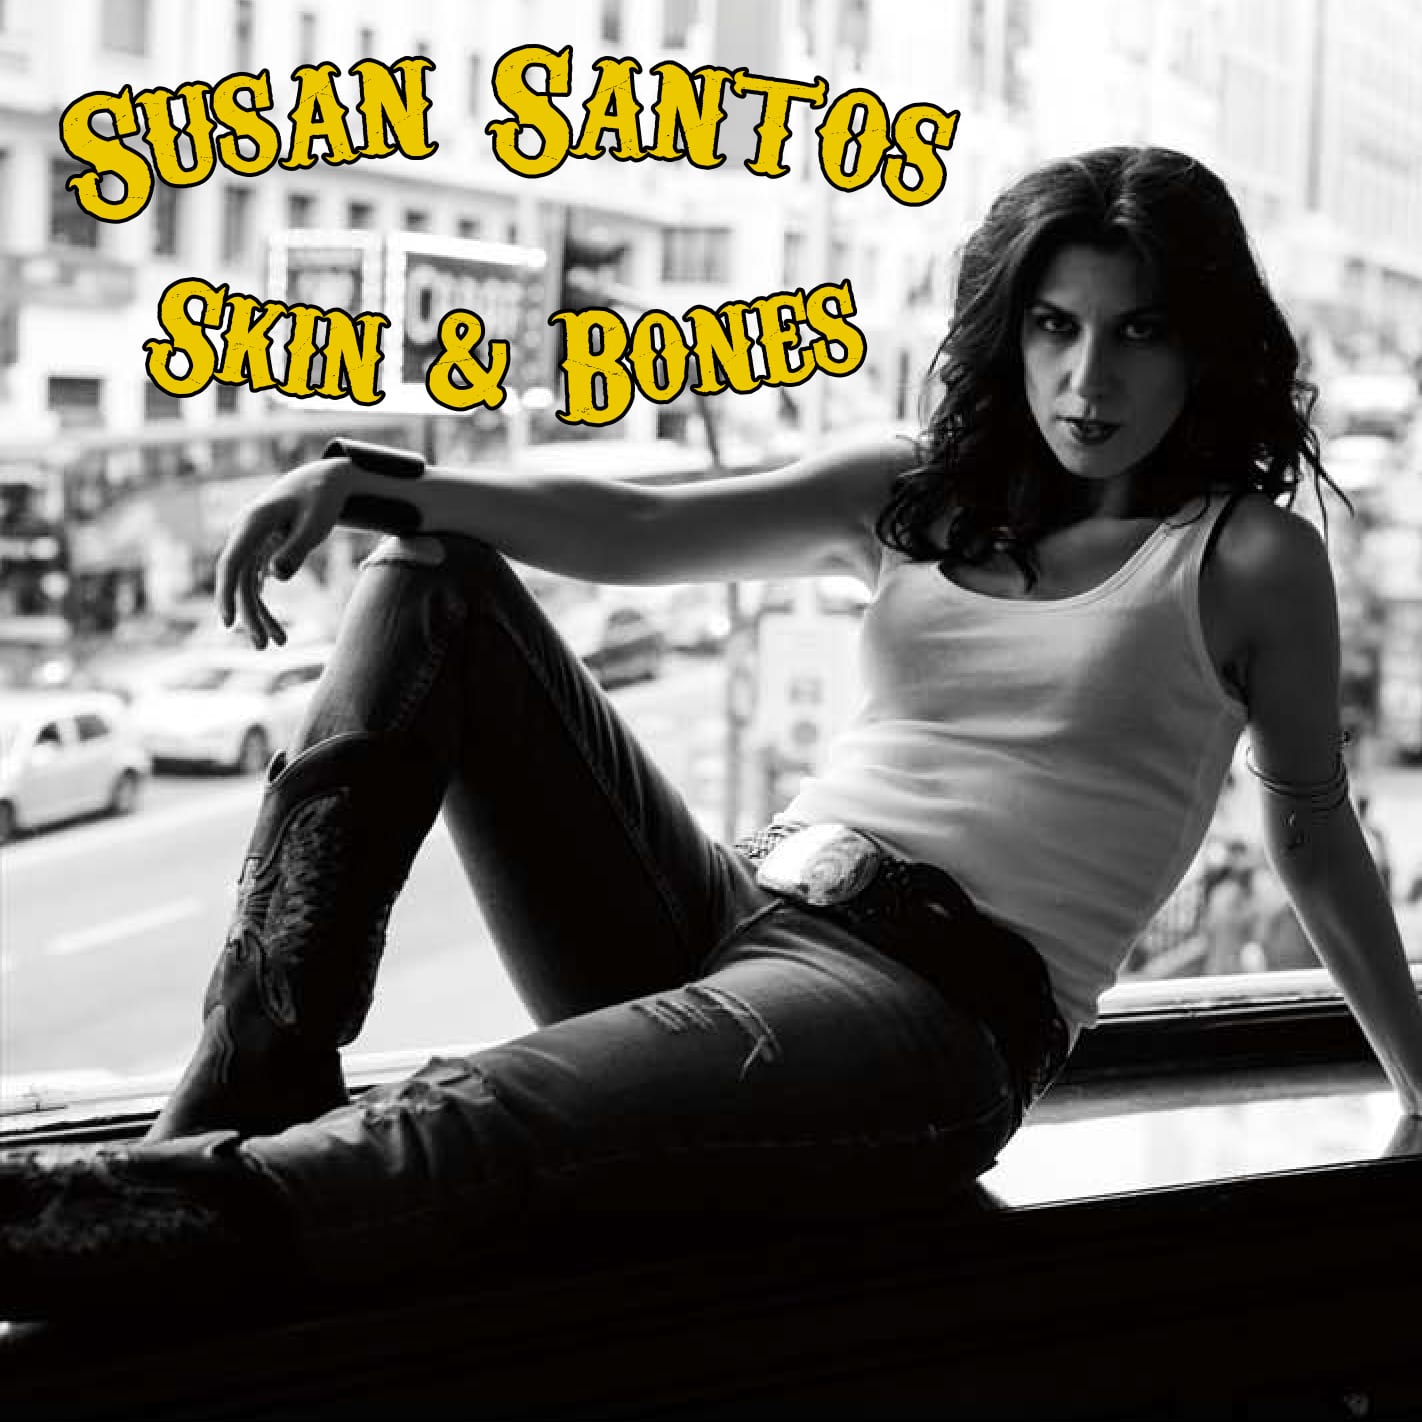 SUSAN SANTOS presentando su nuevo disco en Madrid el próximo martes